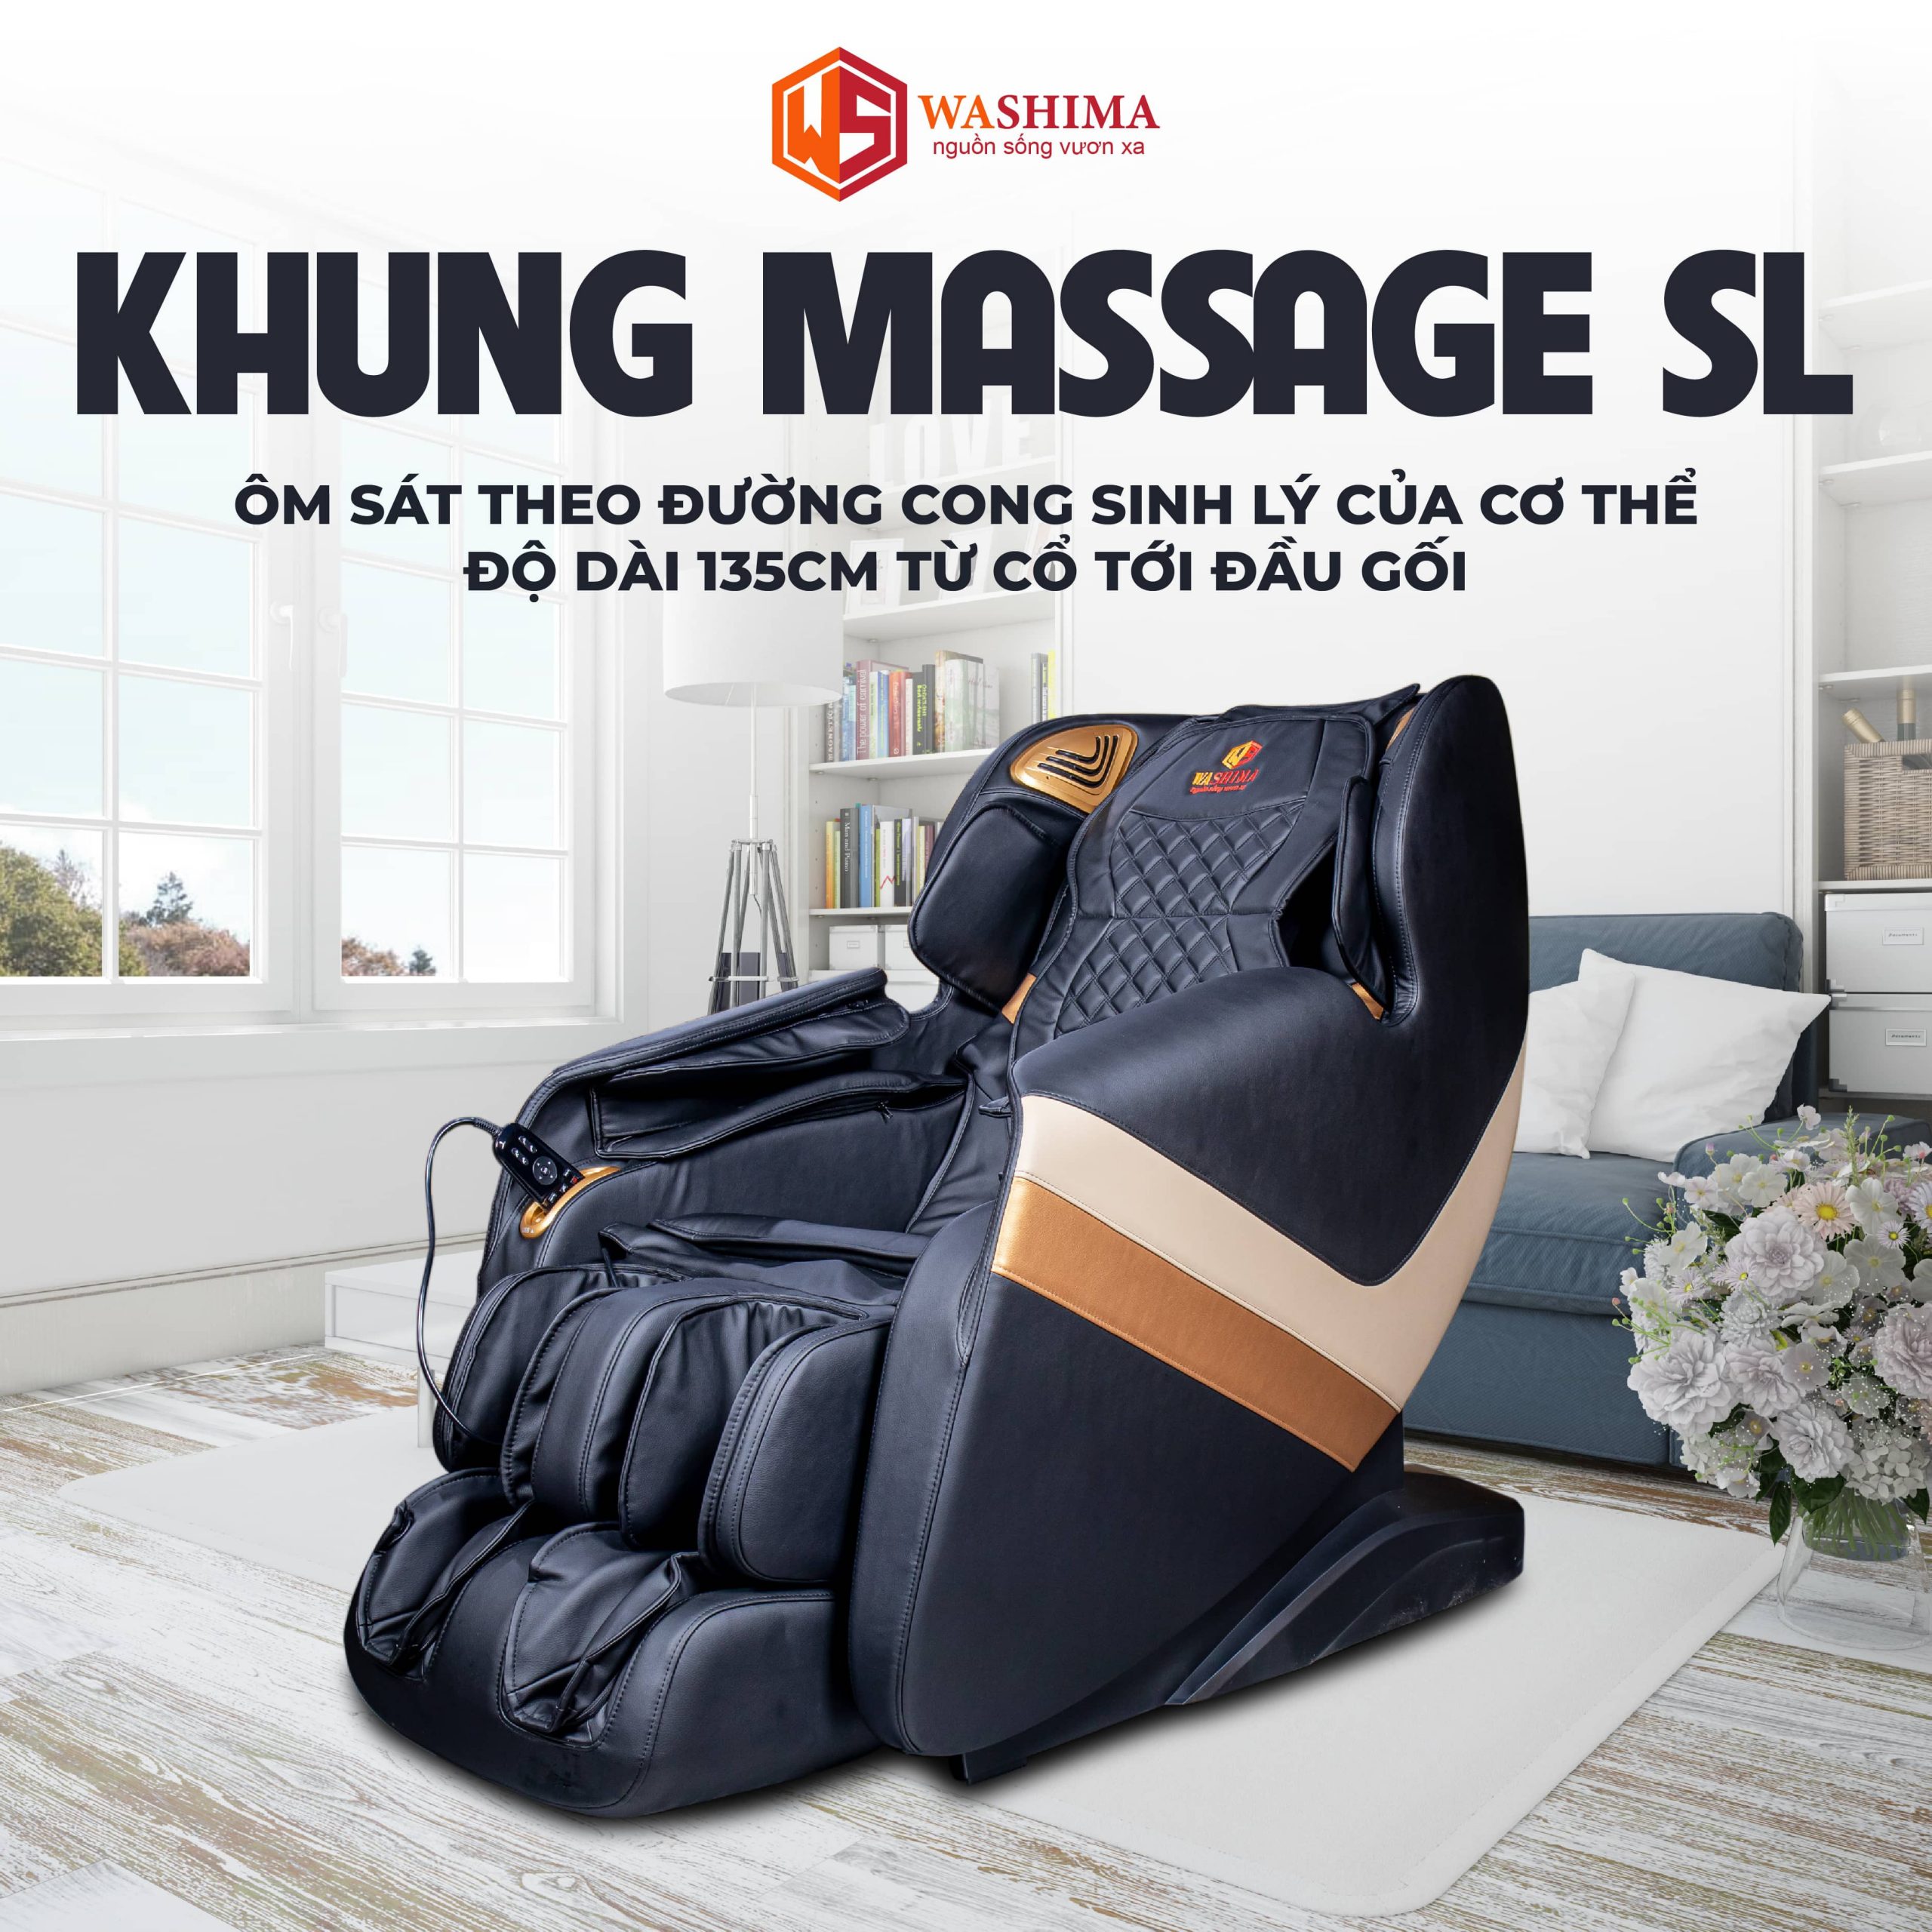 Khung massage dạng SL hỗ trợ massage dọc mạn sườn và khắp sống lưng của cơ thể